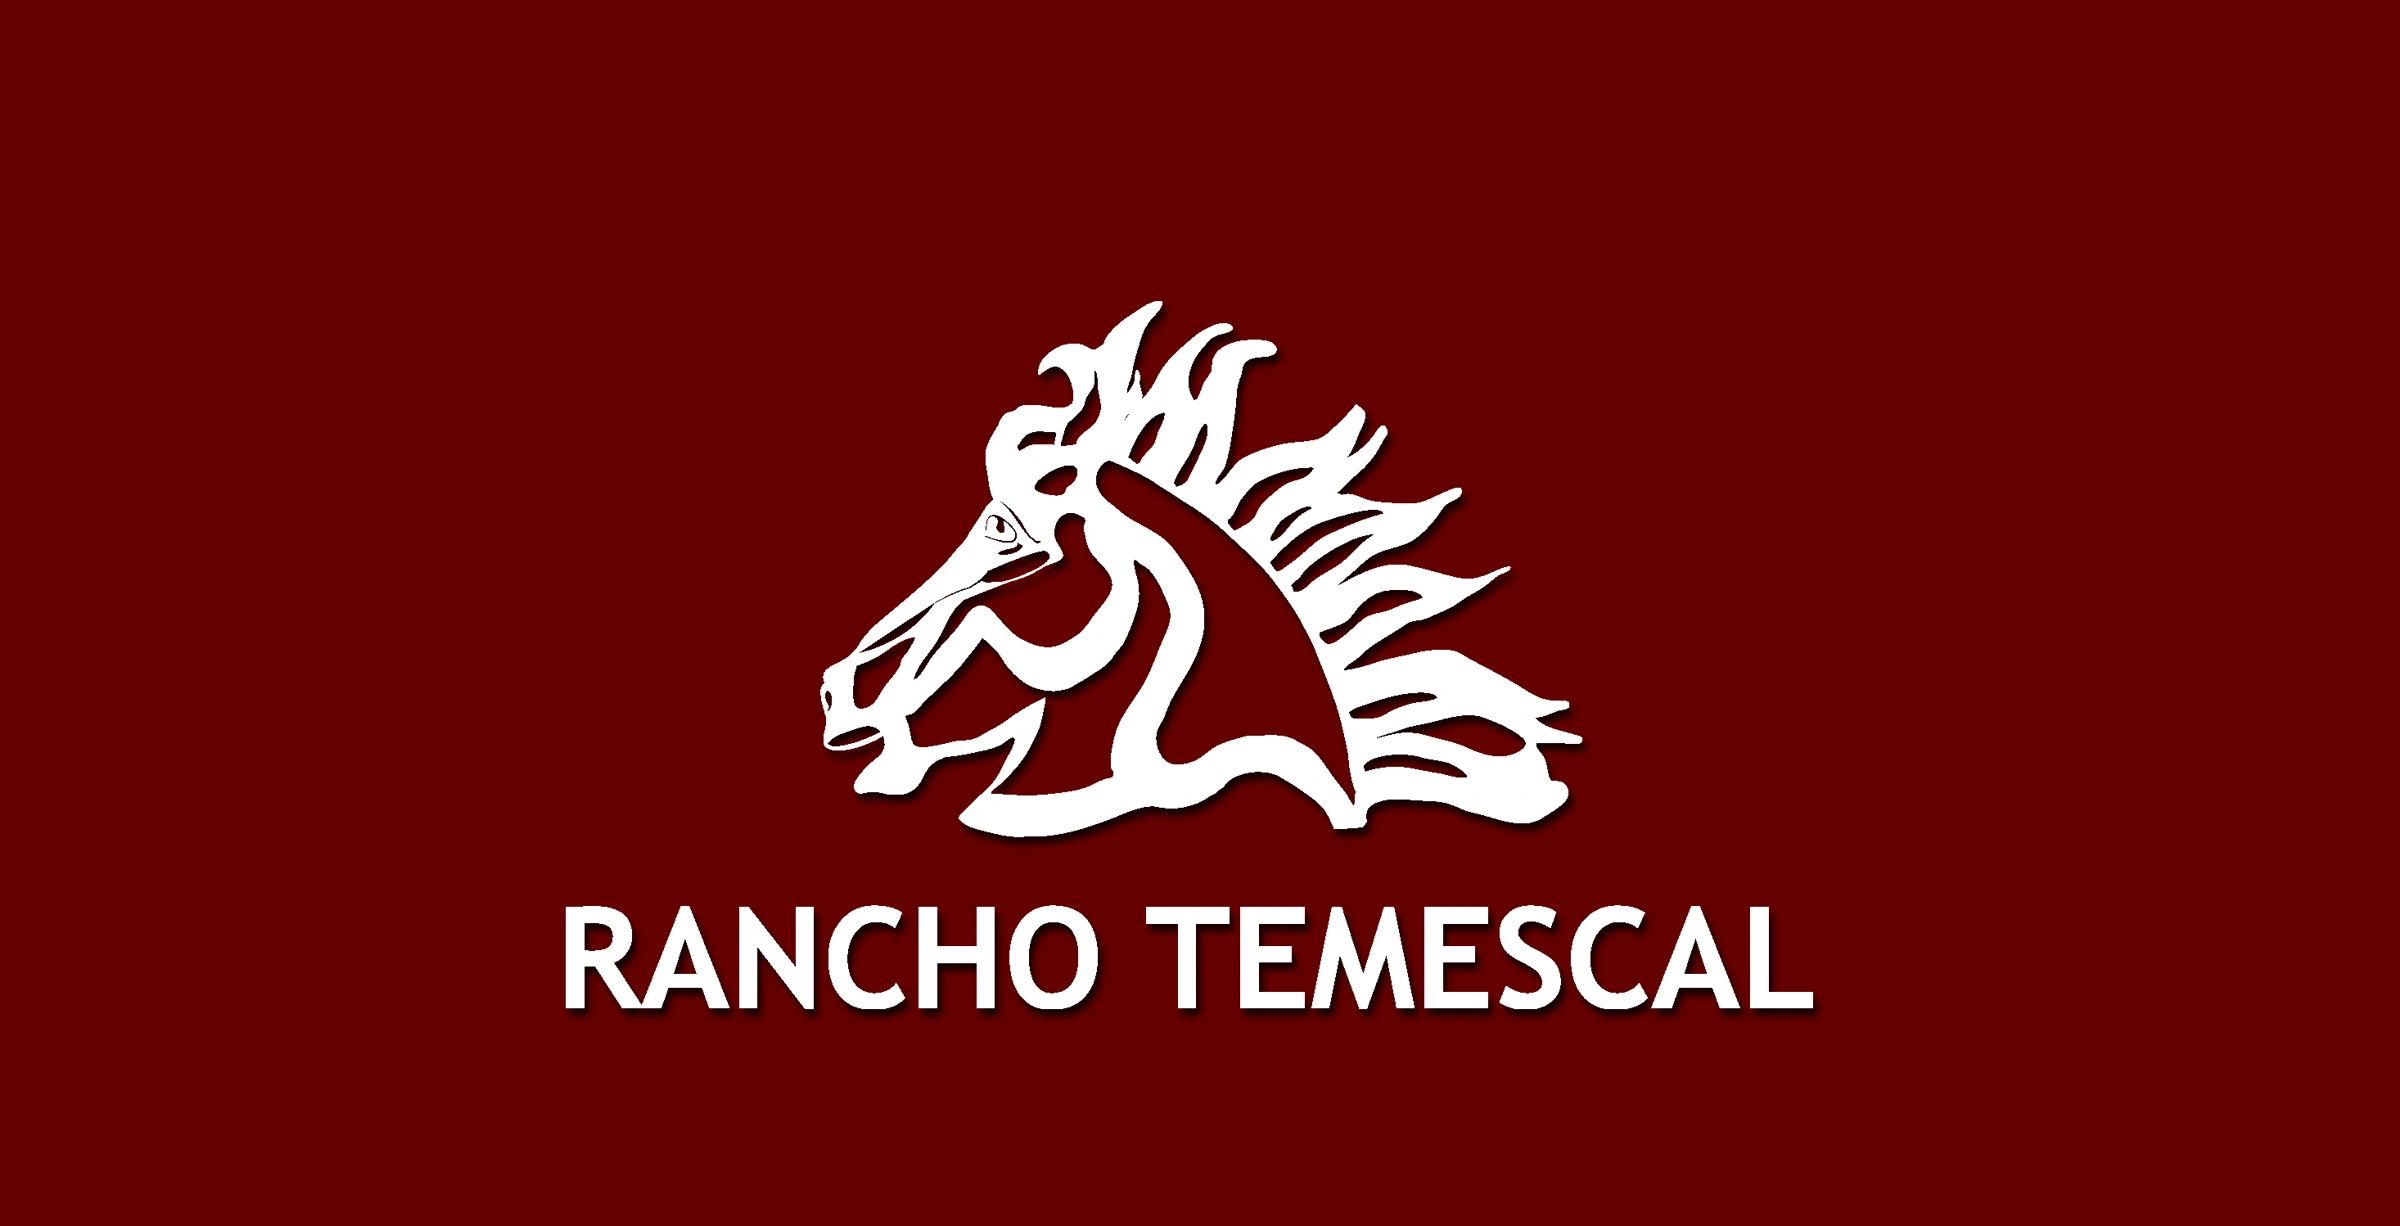 Rancho Temescal